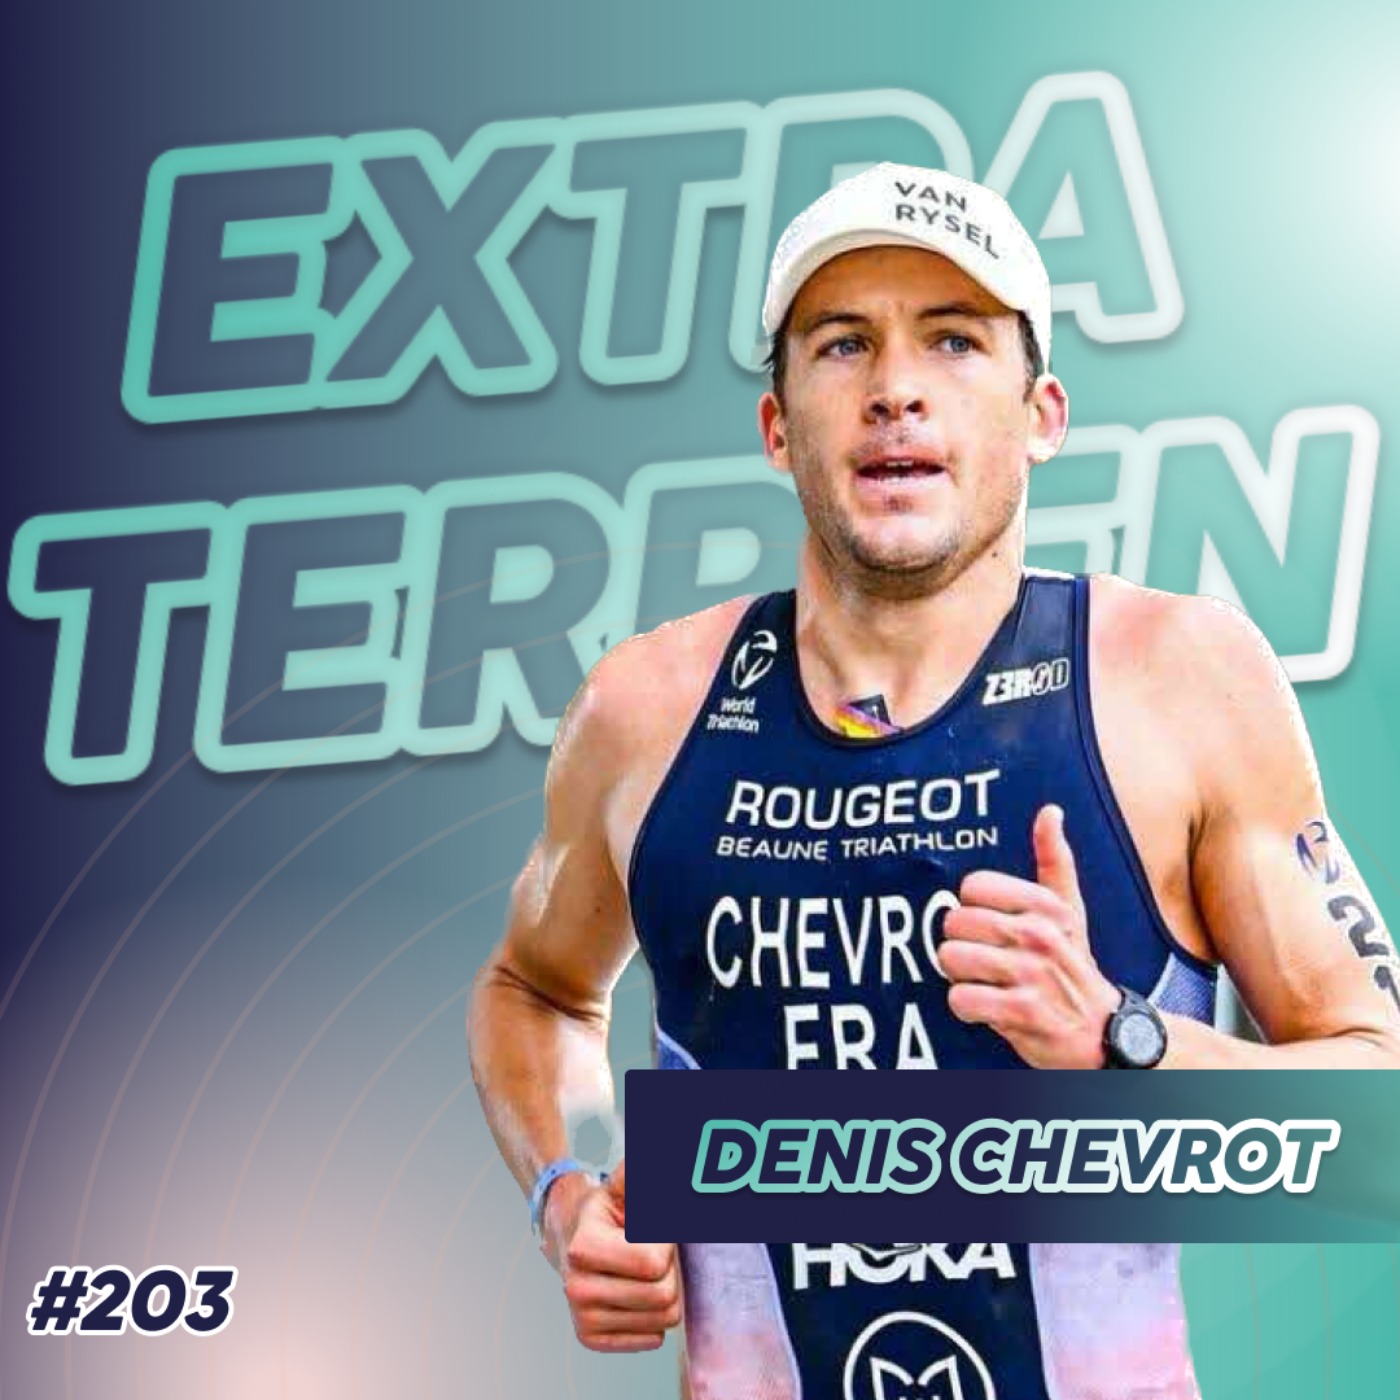 Denis Chevrot - Le français finisher de 25 Ironman